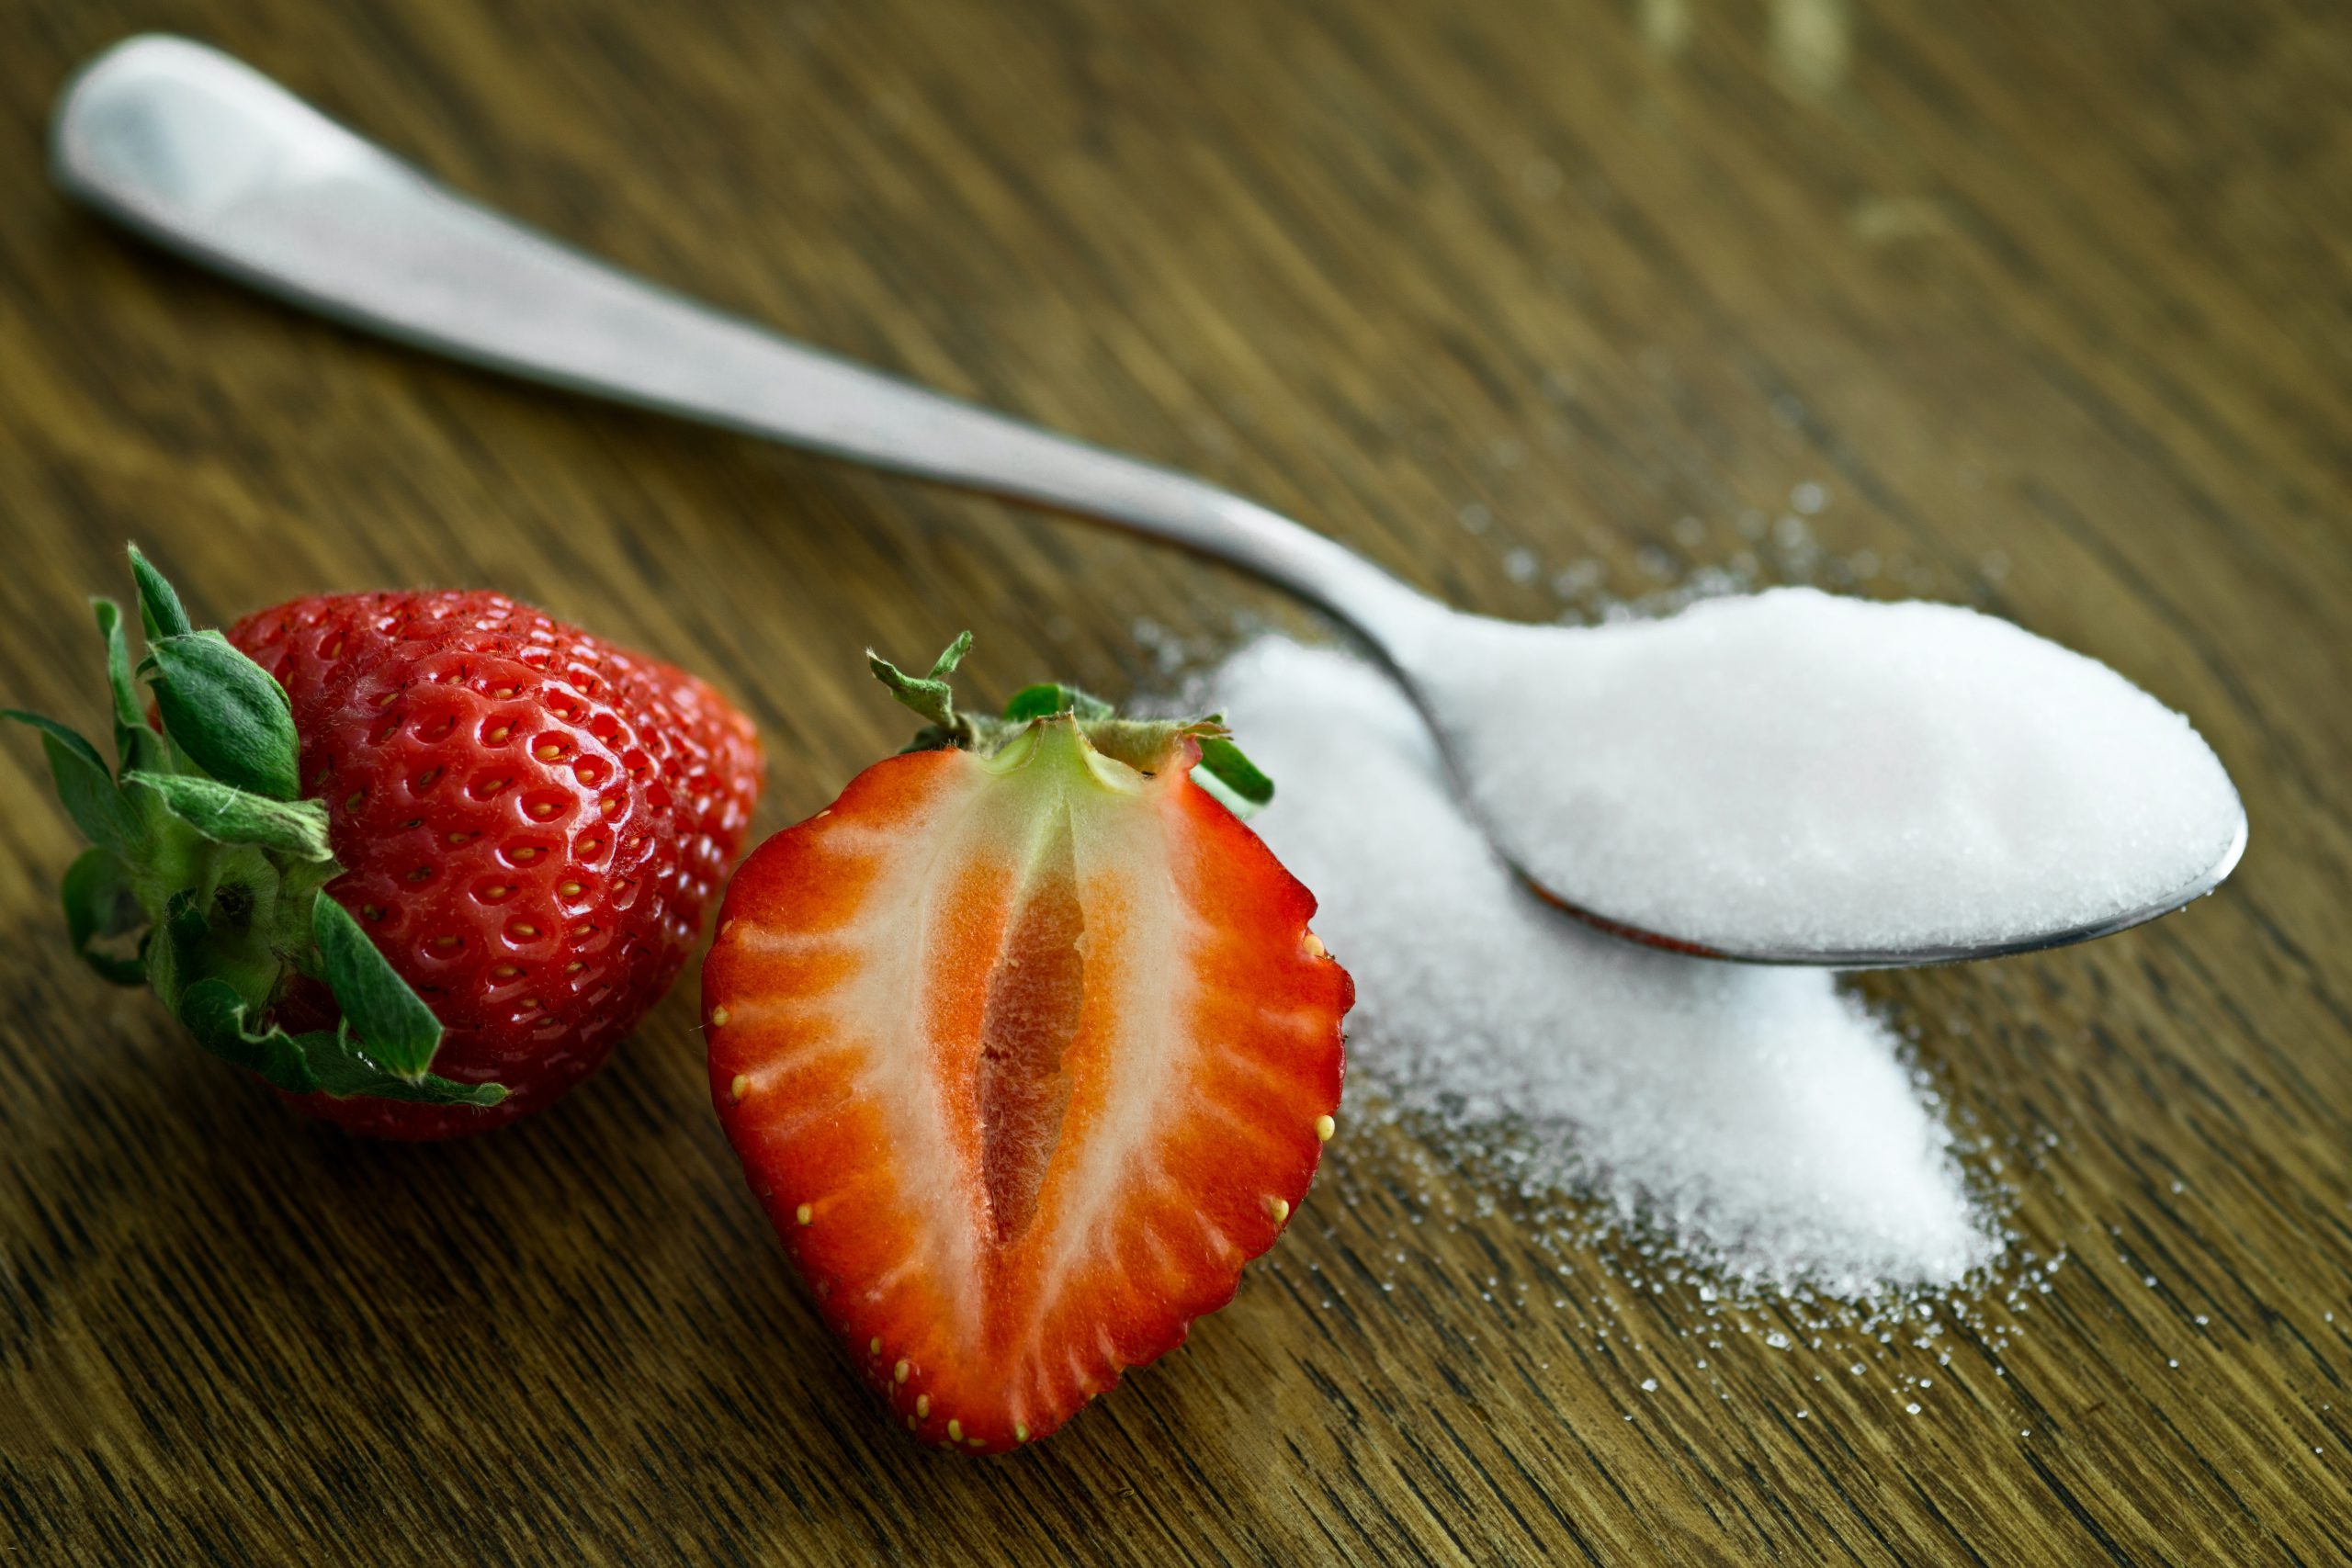 Is suiker gezond?